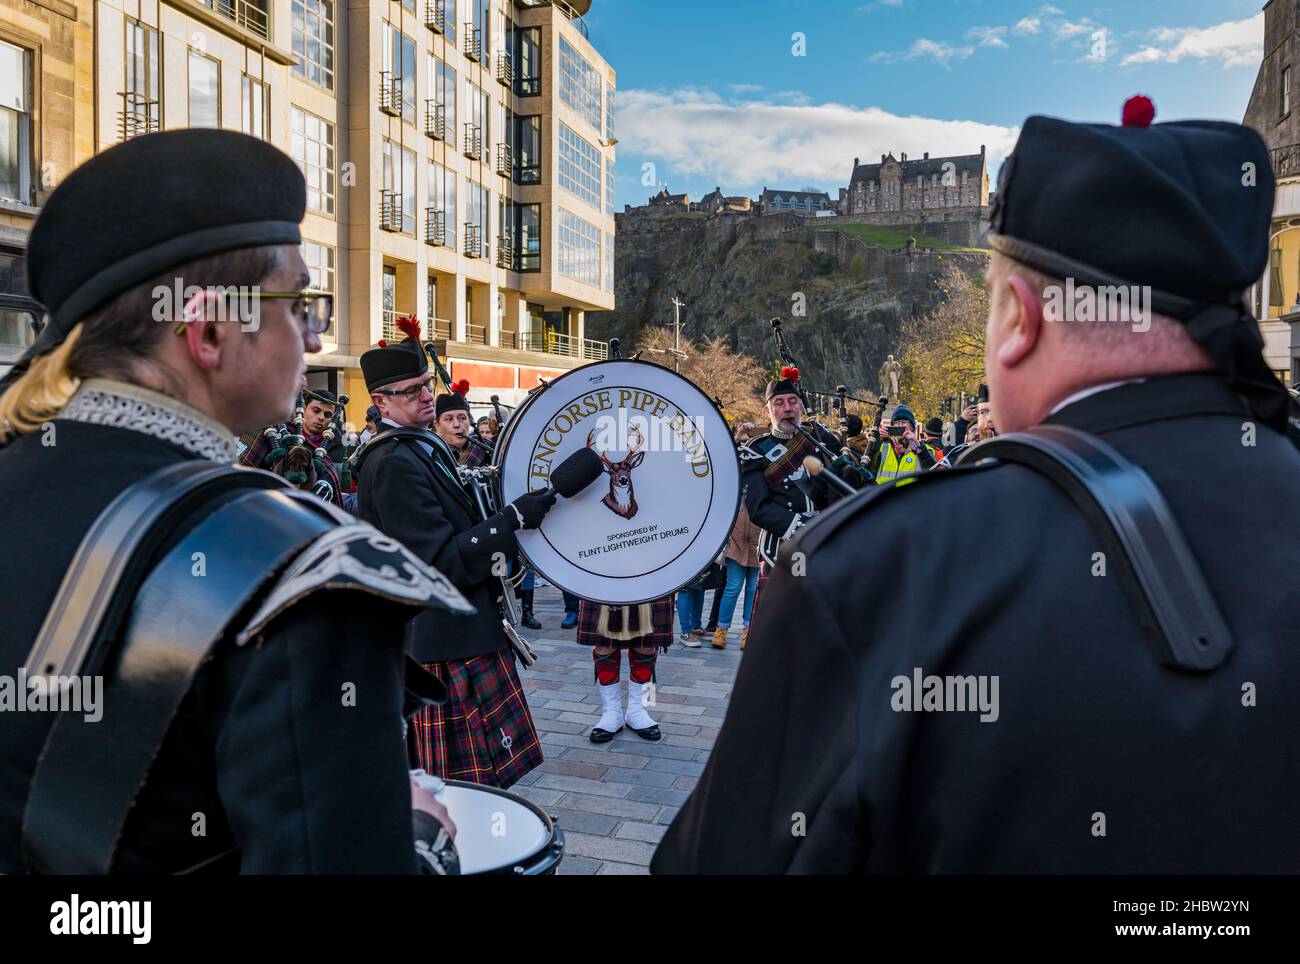 Gruppo scozzese di pipe con suonatori di tamburi e cornamuse al festival di Diwali con il castello di Edimburgo sullo sfondo, Edimburgo, Scozia, Regno Unito Foto Stock